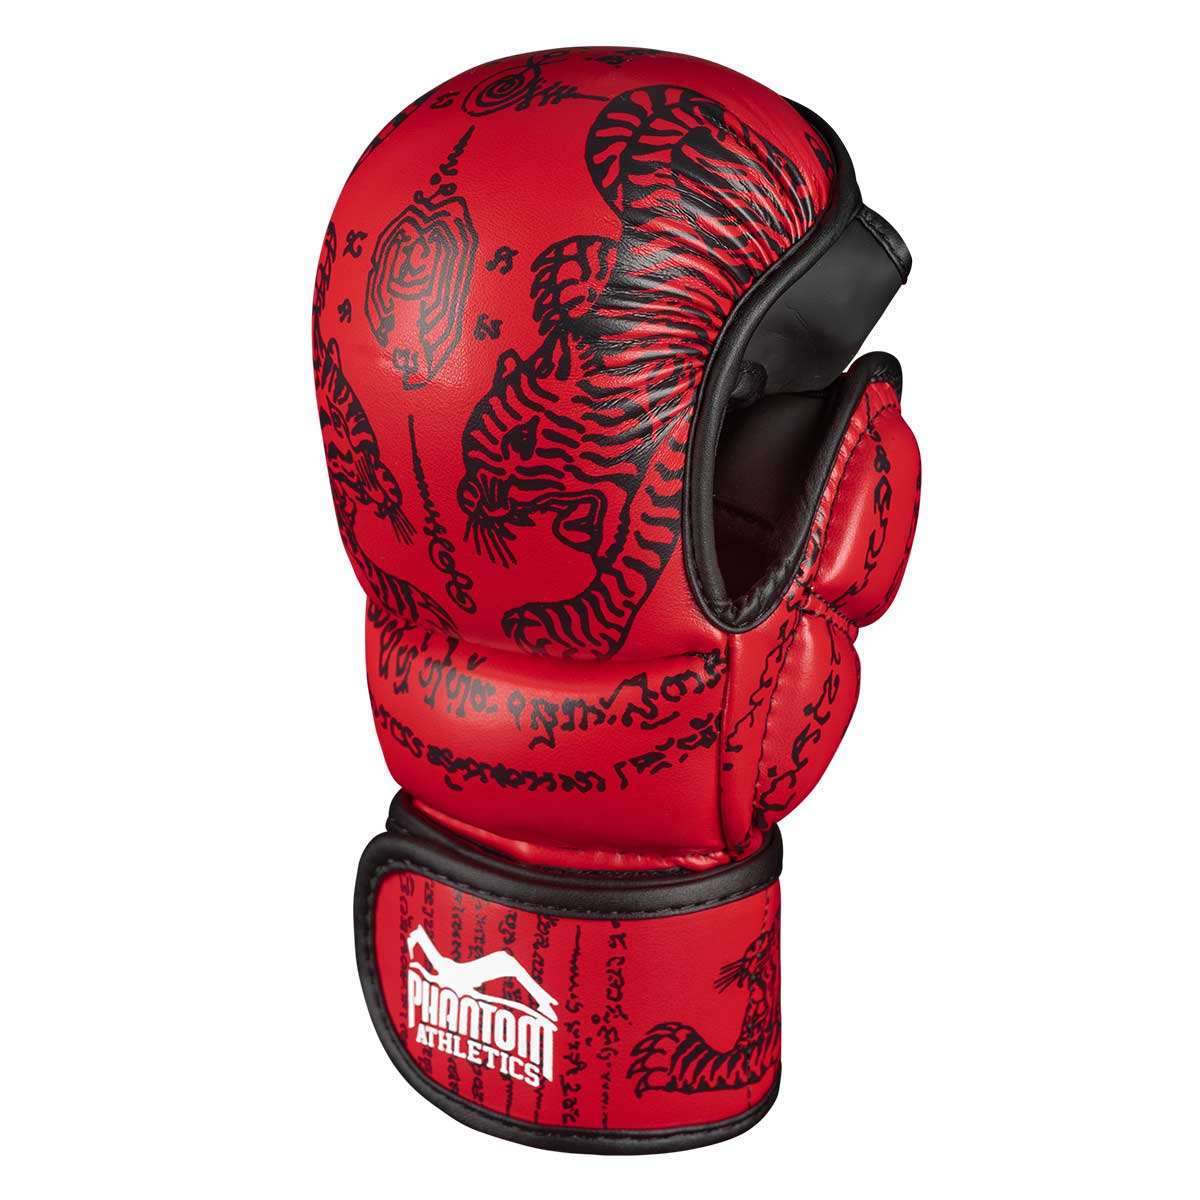 Phantom Muay Thai Handschuhe für Thaiboxen und MMA Sparring, Wettkampf und Training. Im traditionellen Sak Yant Design und der Farbe Rot.